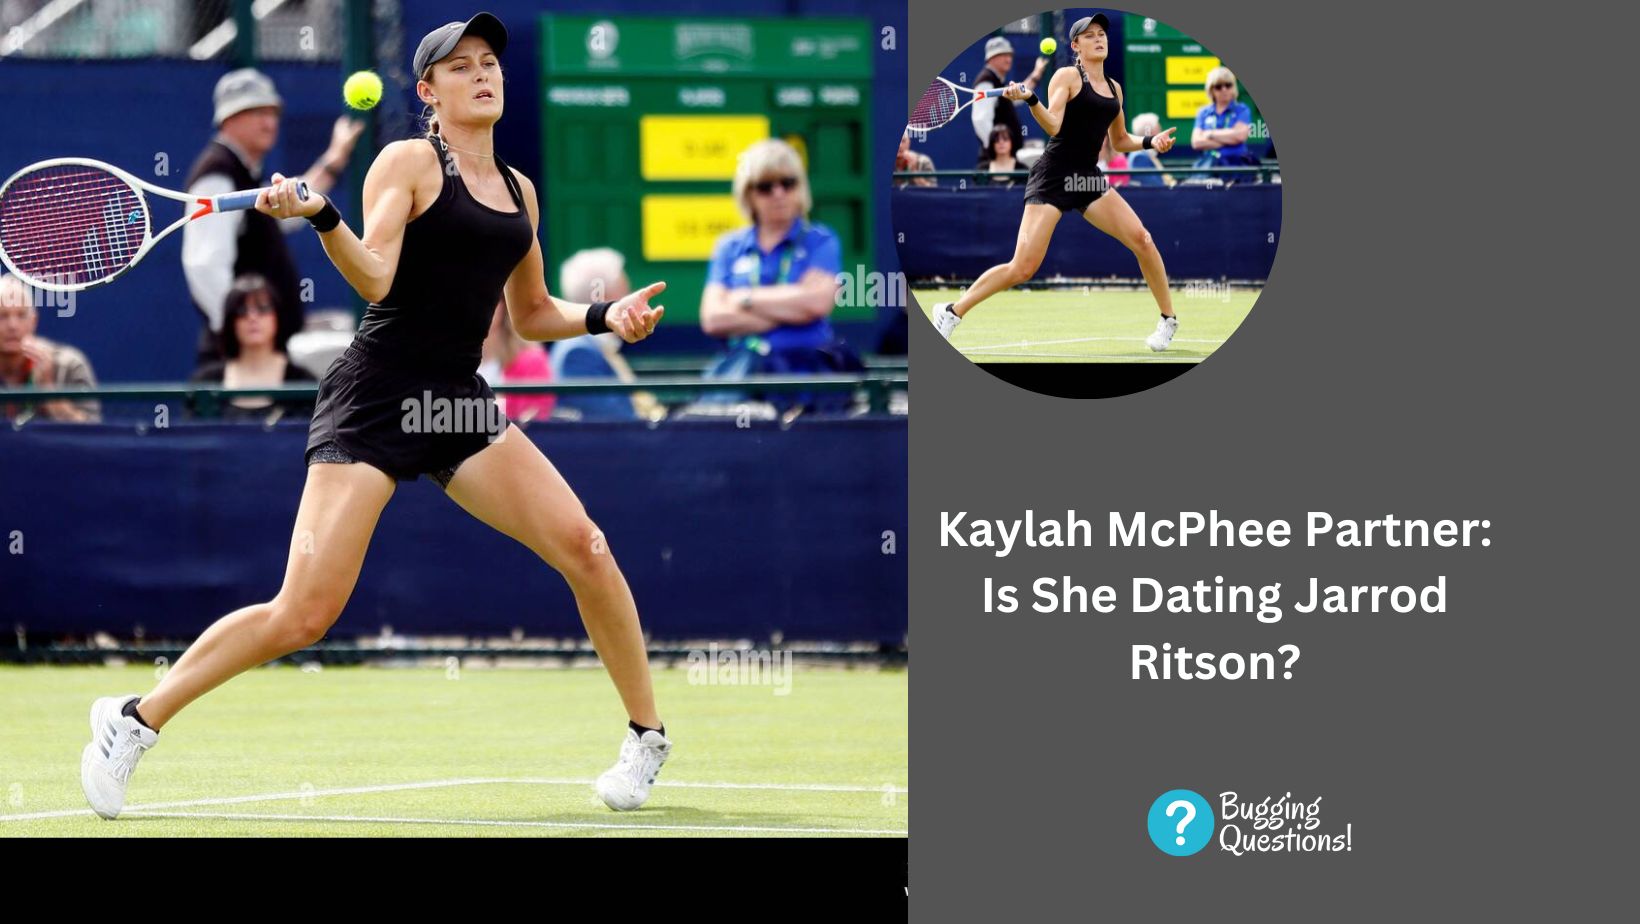 Kaylah McPhee Partner: Is She Dating Jarrod Ritson?